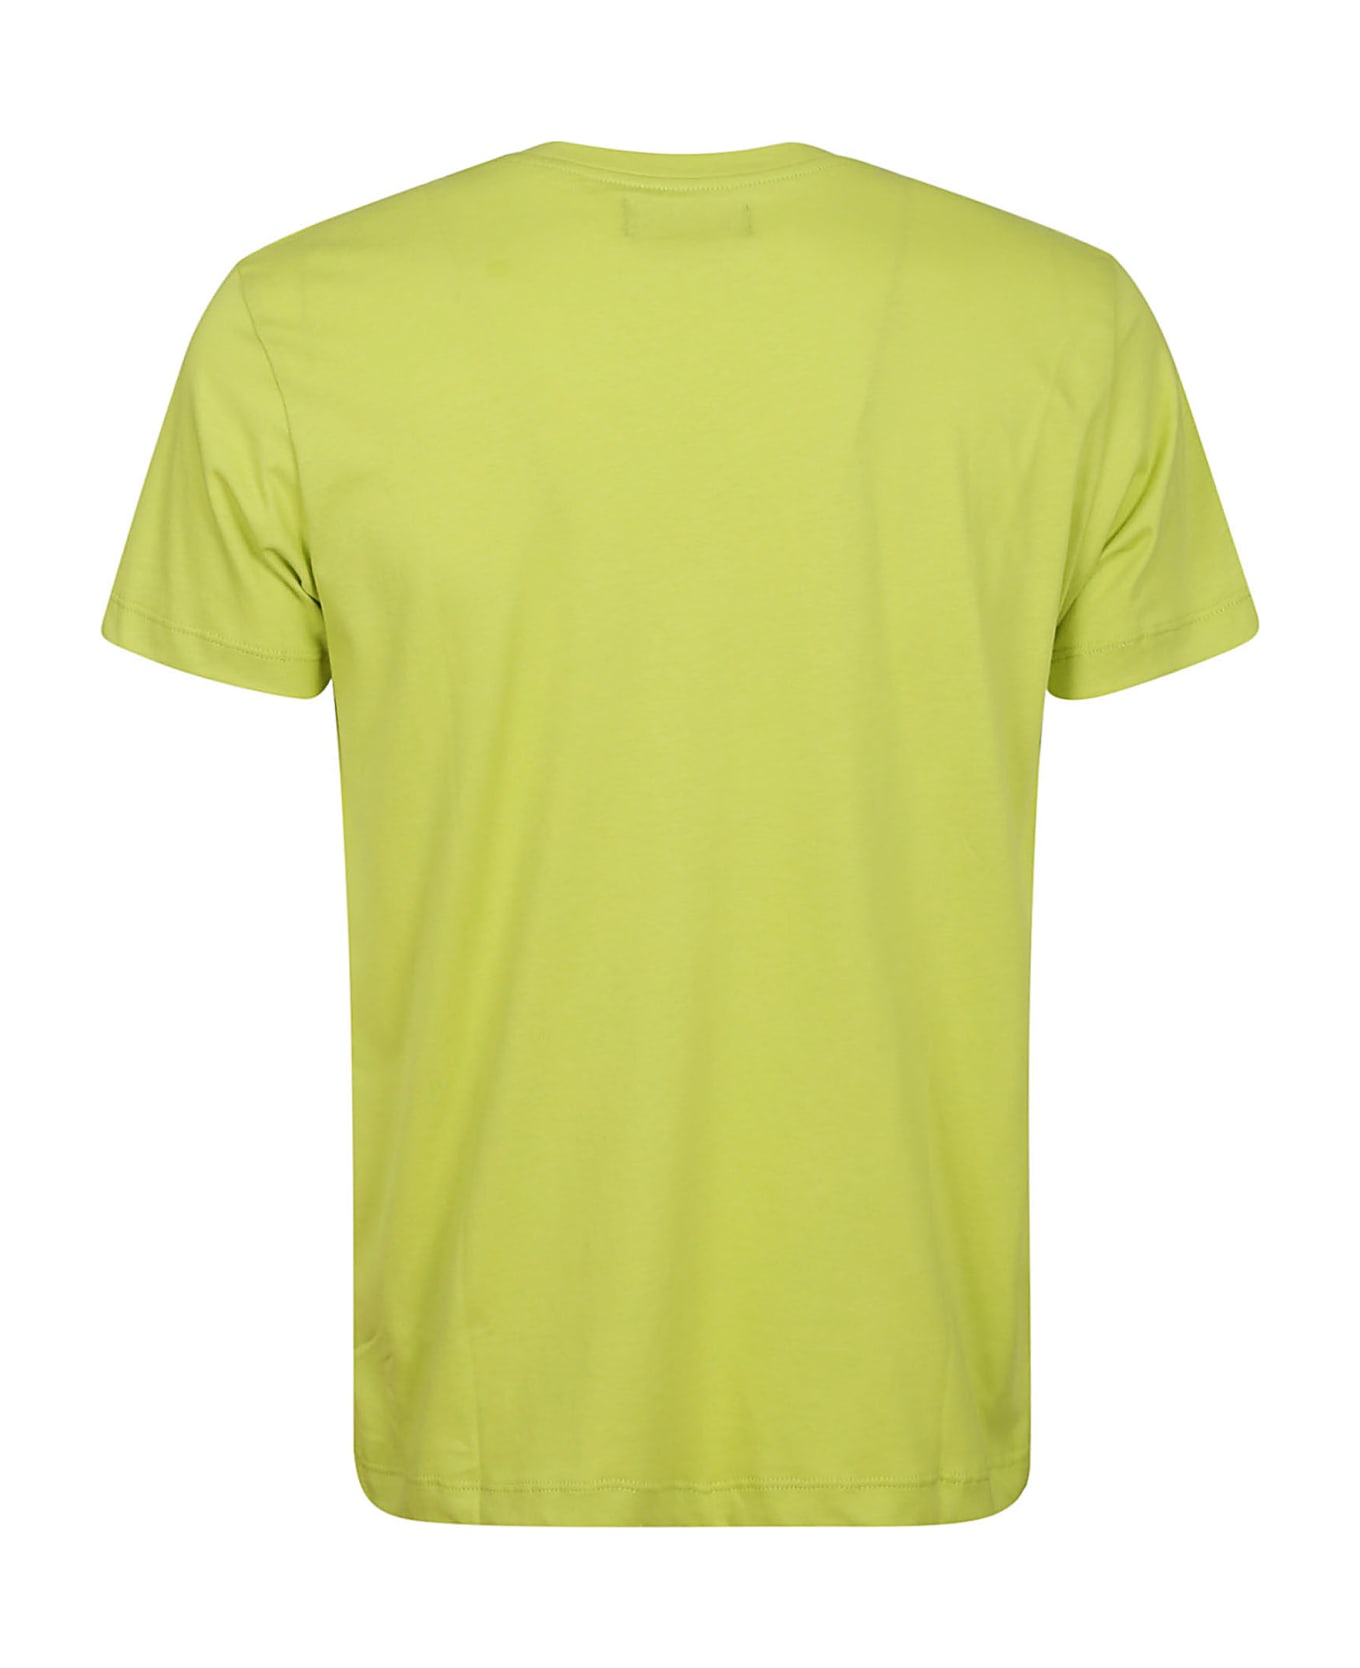 Vilebrequin T-shirt - Acid Green シャツ